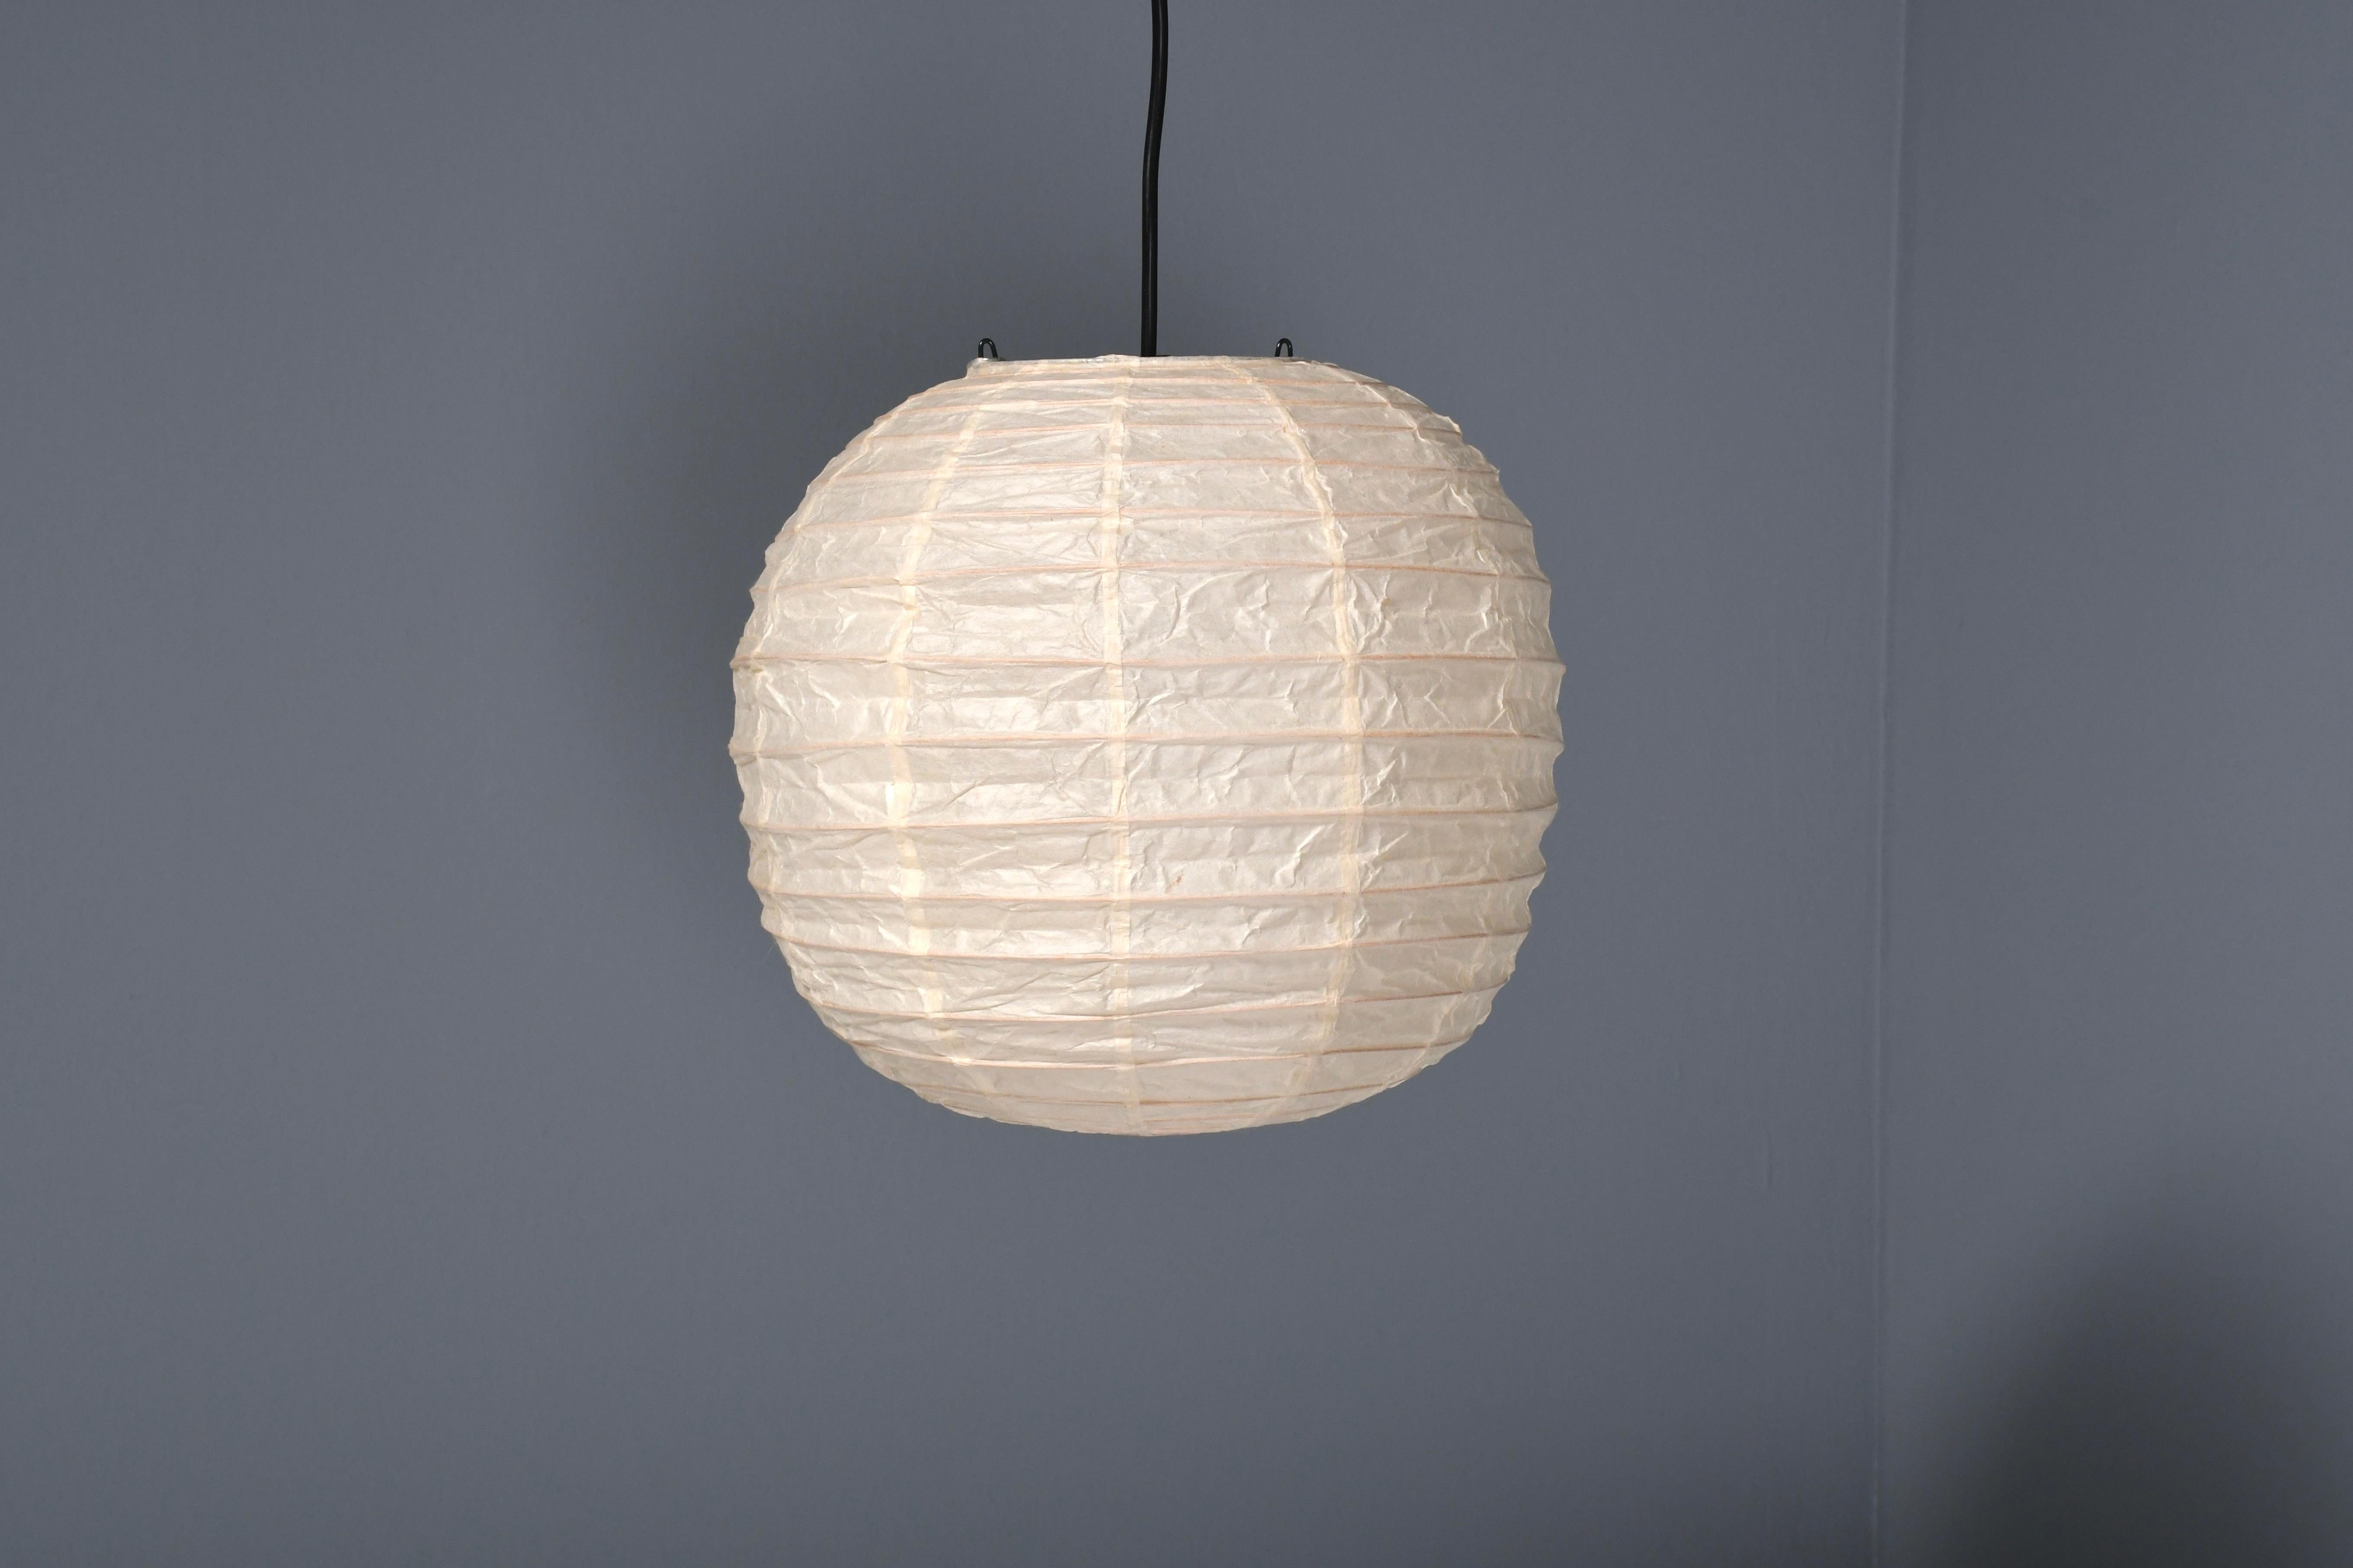 Lampe Akari 30D précoce en excellent état. 

Conçu par Isamu Noguchi en 1951 Produit par Ozeki & Co., Ltd. 

Nouveau vieux stock, 4 articles disponibles !

Le modèle 30D est un pendentif en forme de globe dans la série Akari.

Cet exemple